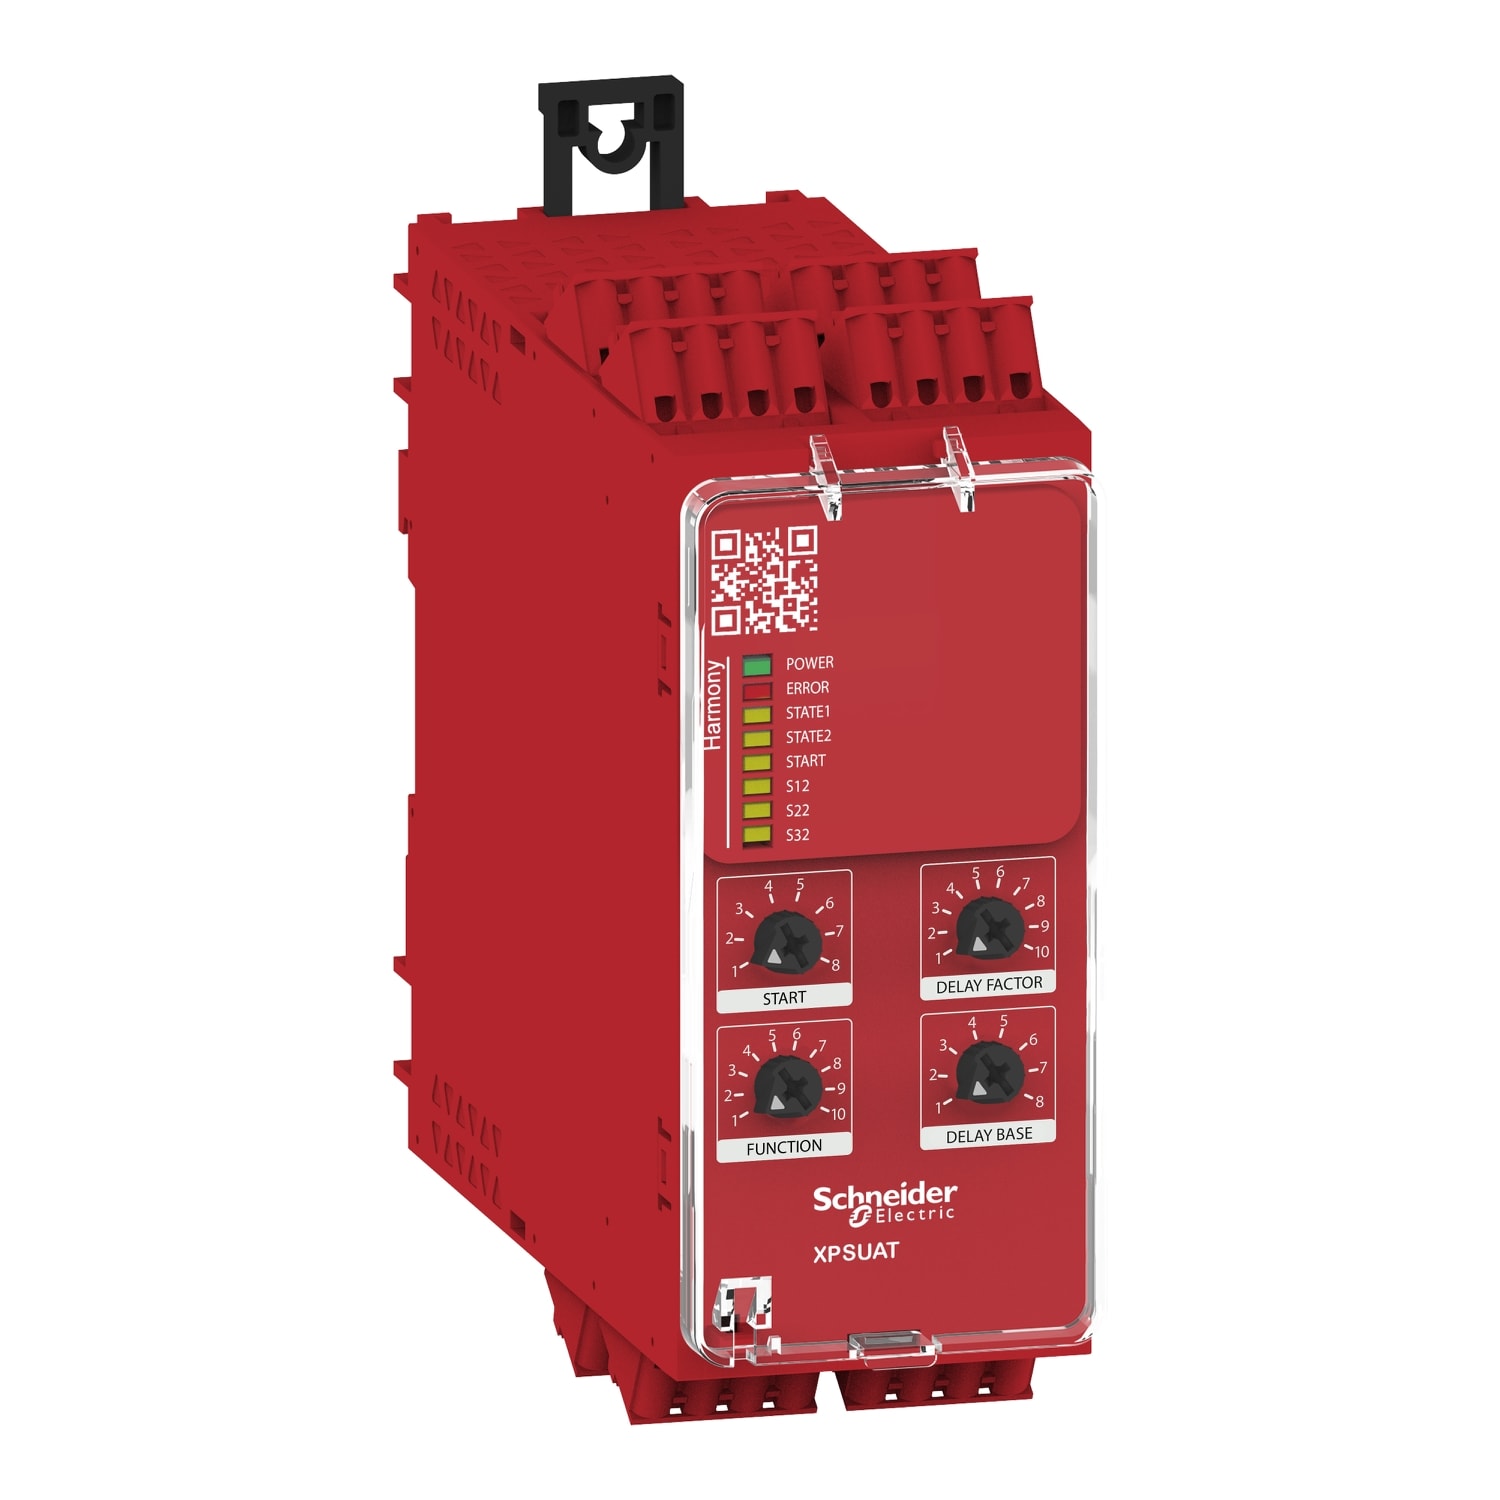 Schneider Electric - Preventa XPSU - module securite multifonctions - Cat4 - 6F1O - 48-230V - ressor